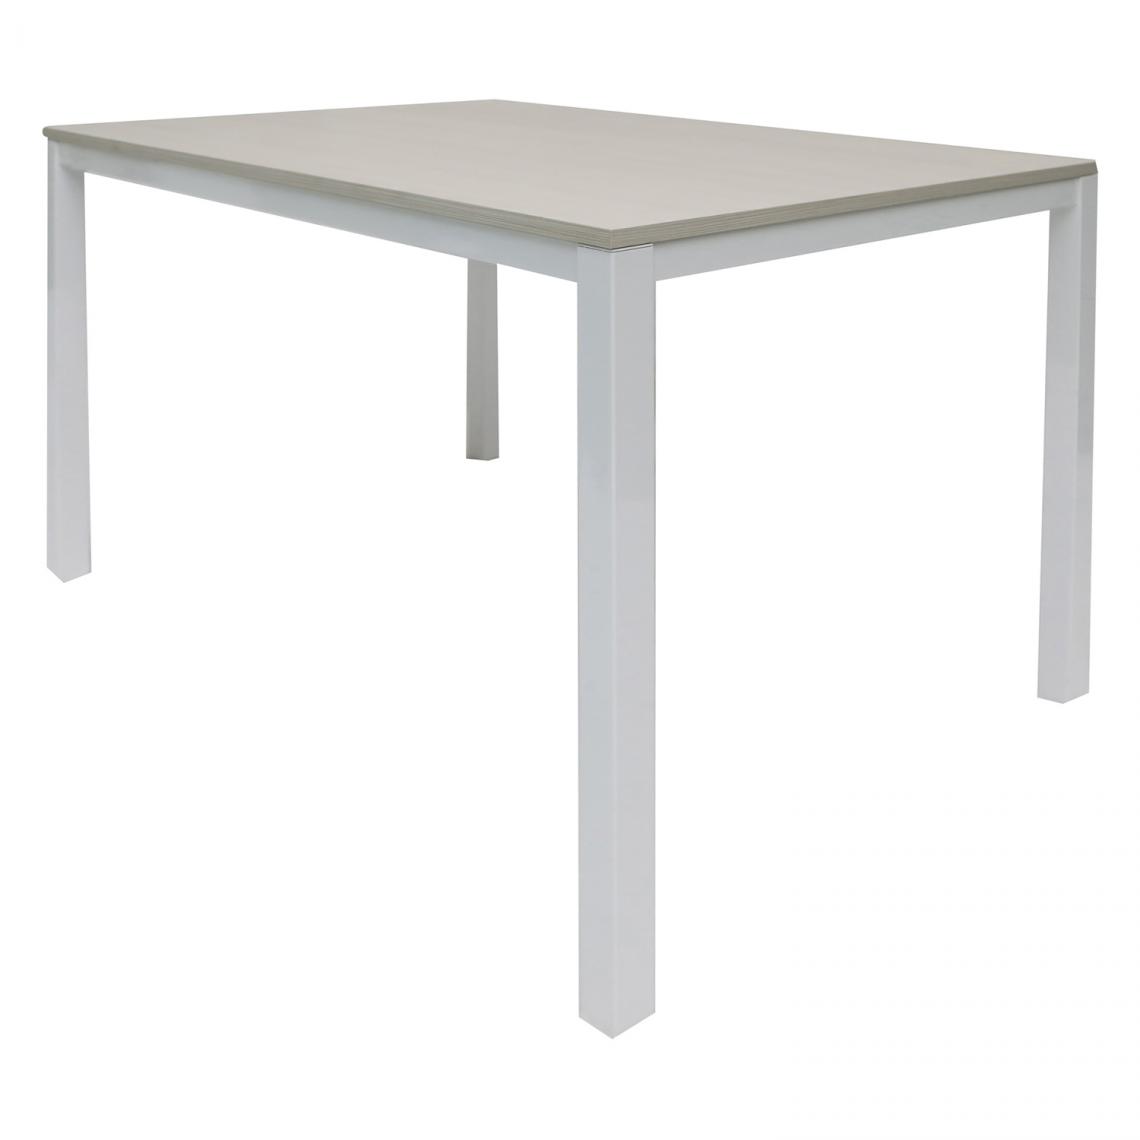 Alter - Table extensible en aluminium peint avec plateau en mélèze, coloris blanc, 110 x 76 x 70 cm - Tables à manger